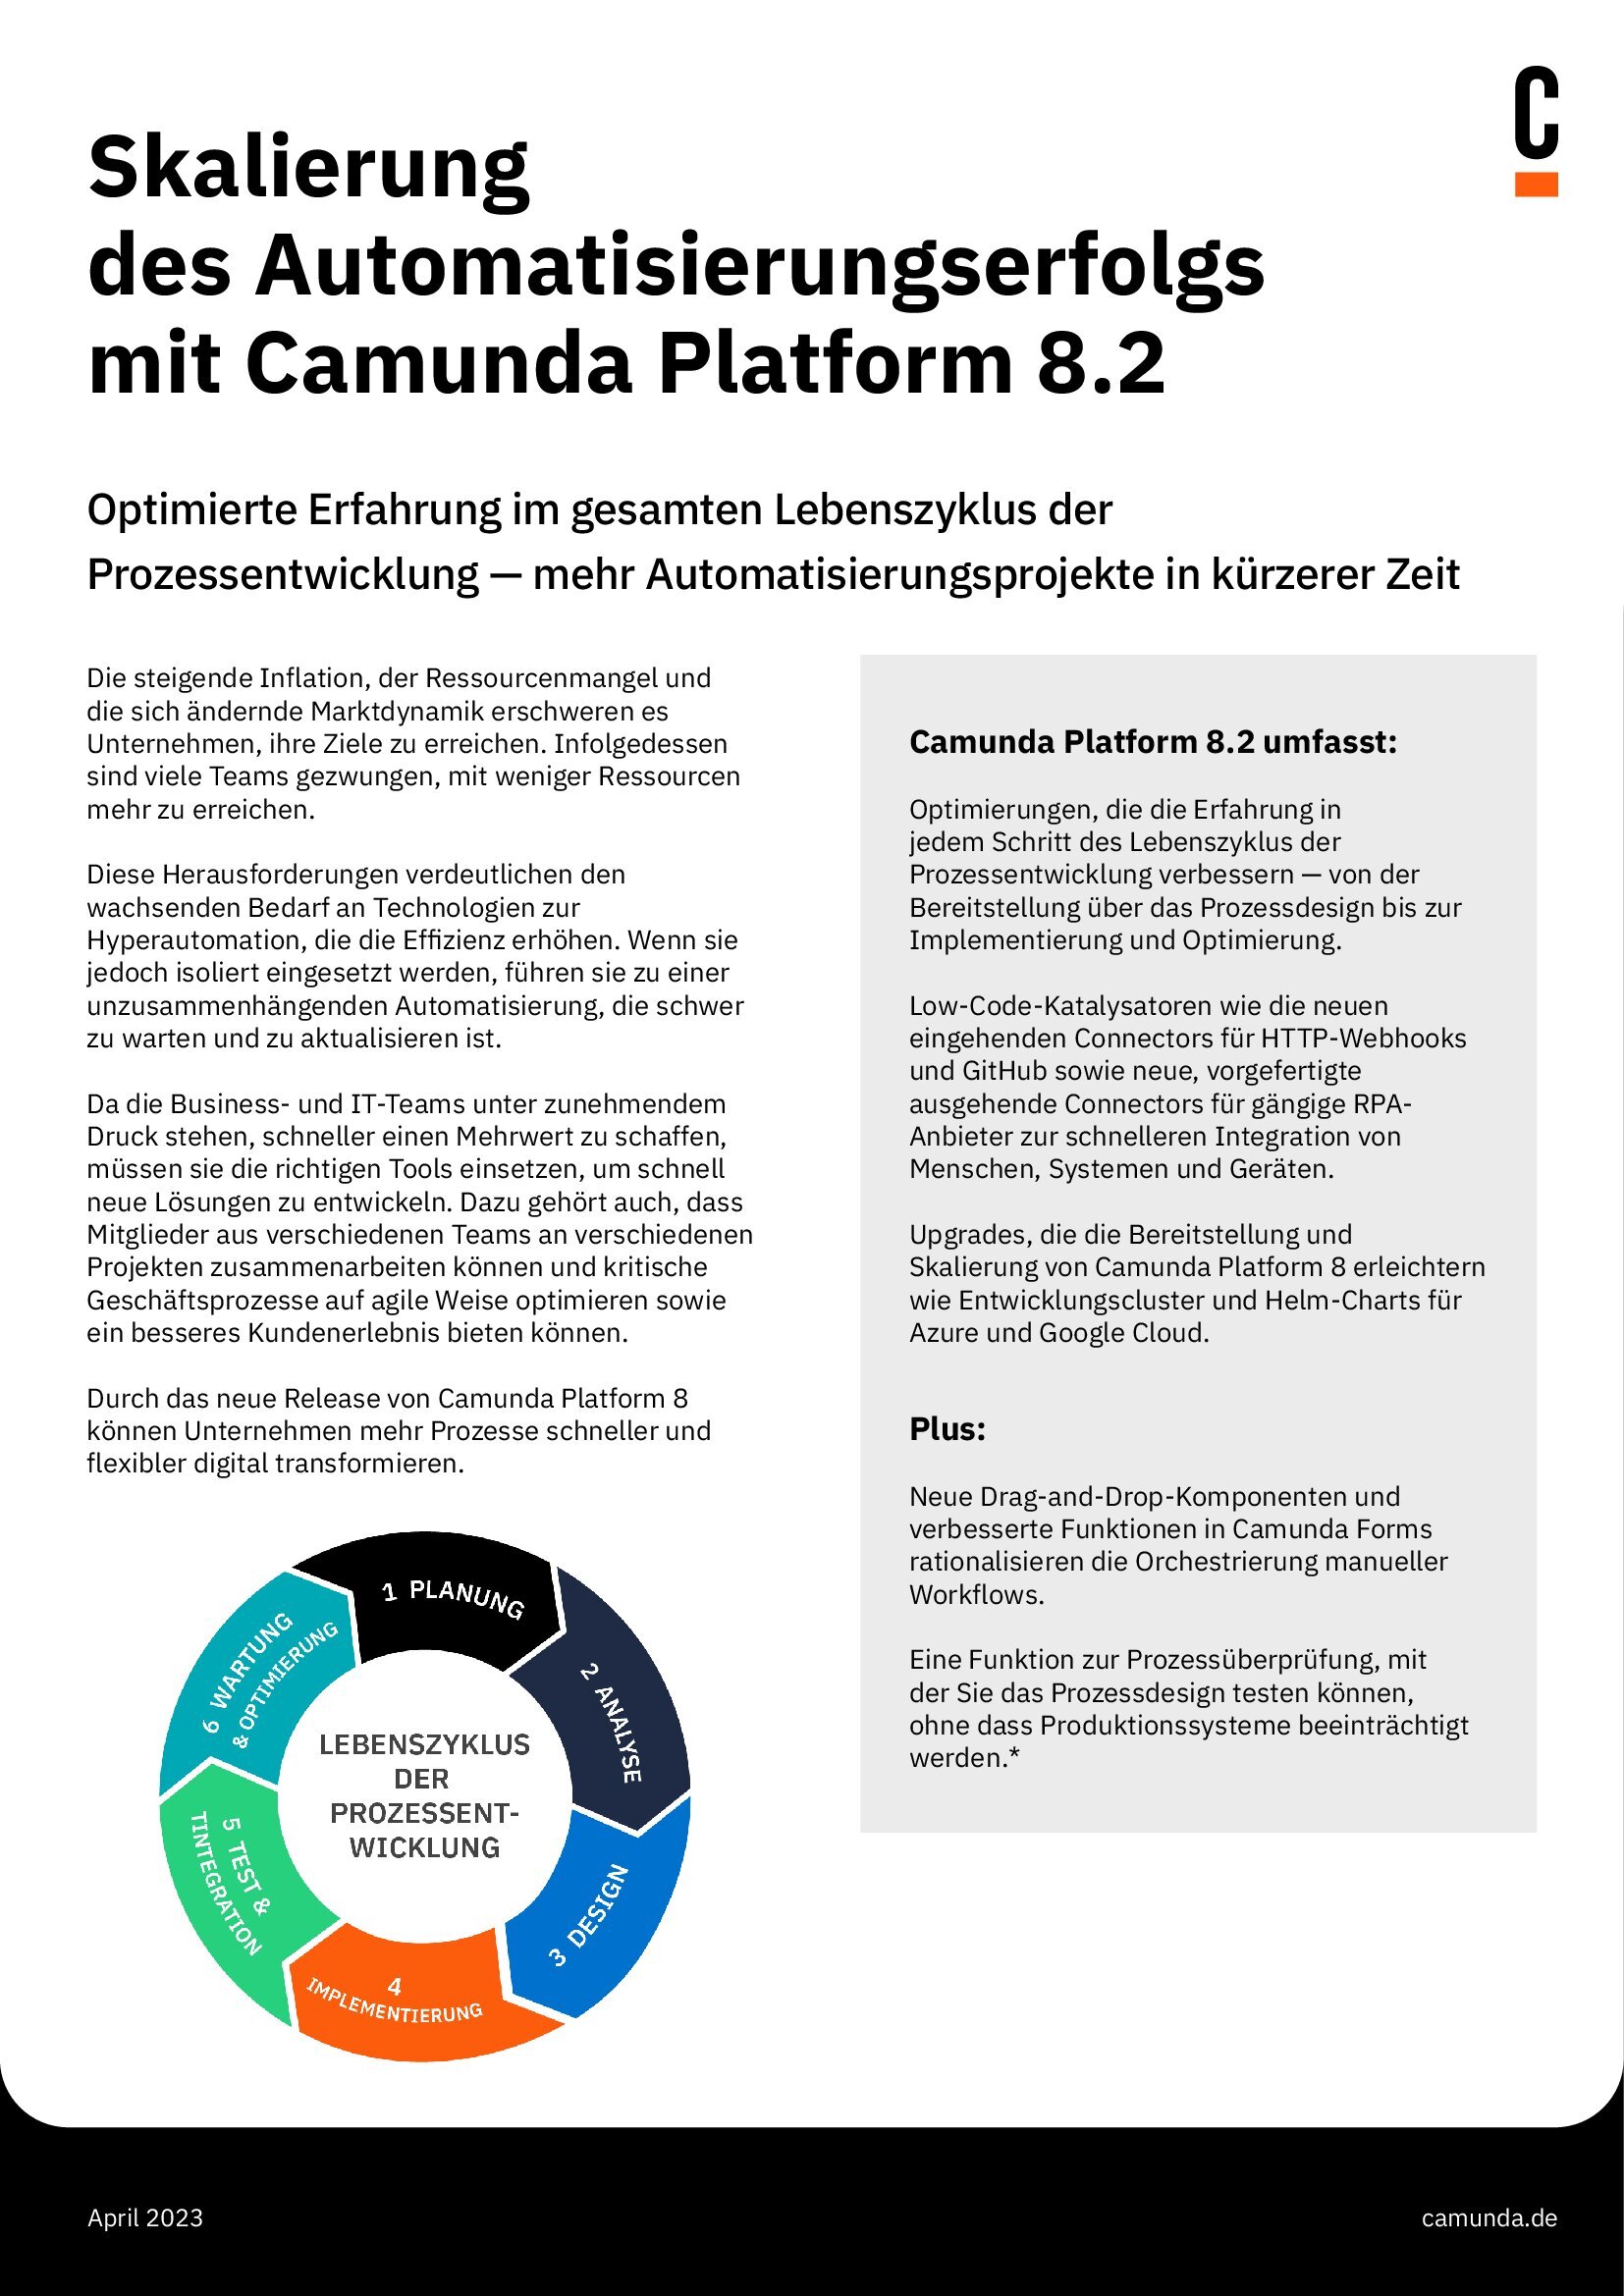 Skalierung des Automatisierungserfolgs mit Camunda Platform 8.2